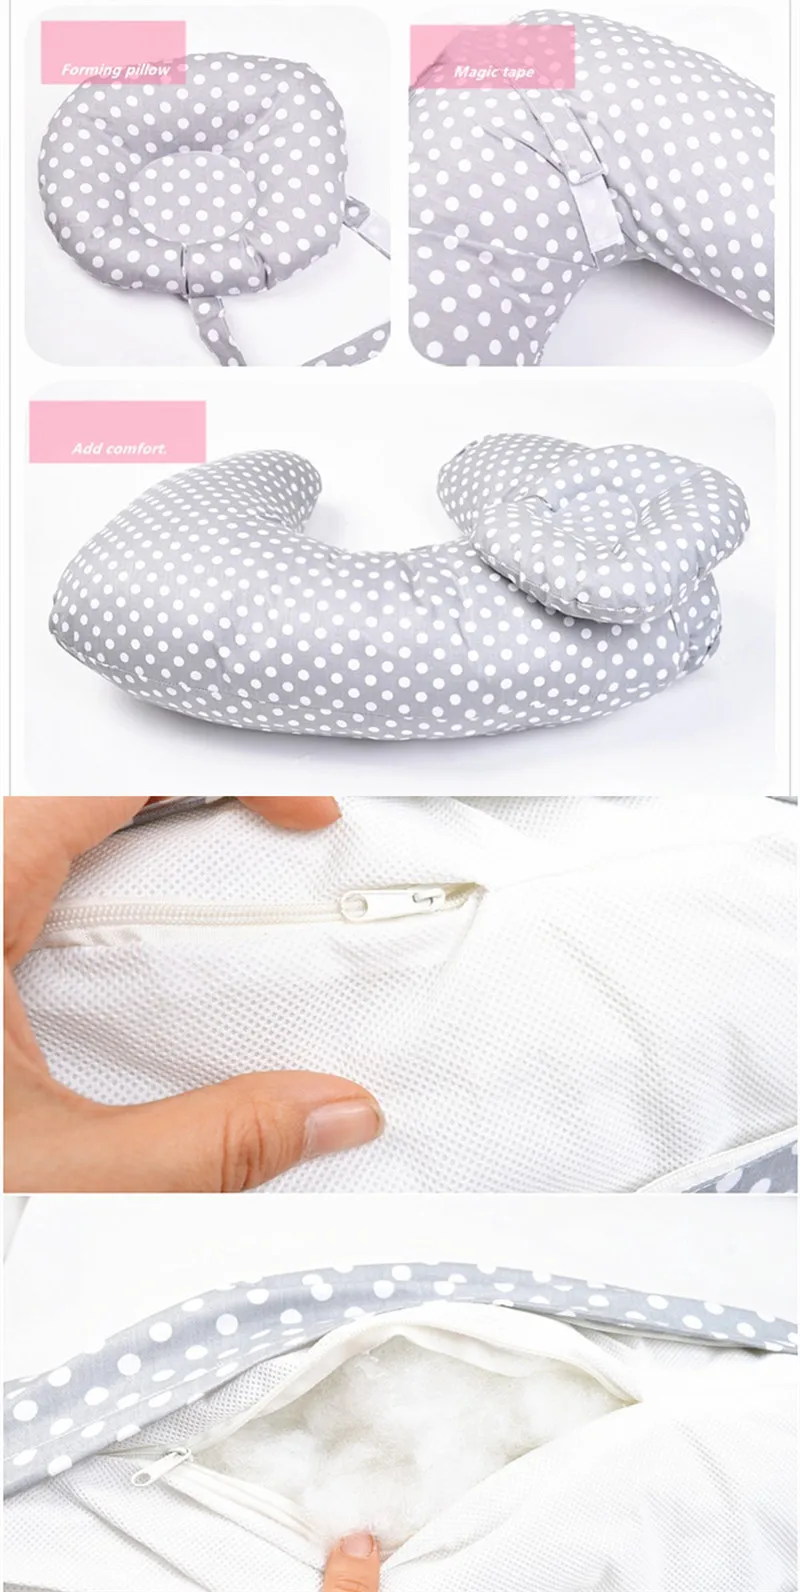 Подушка для грудного вскармливания, u-образная подушка, многофункциональная подушка для кормления, поясная подушка, формирующая подушка, Товары для новорожденных, хлопок